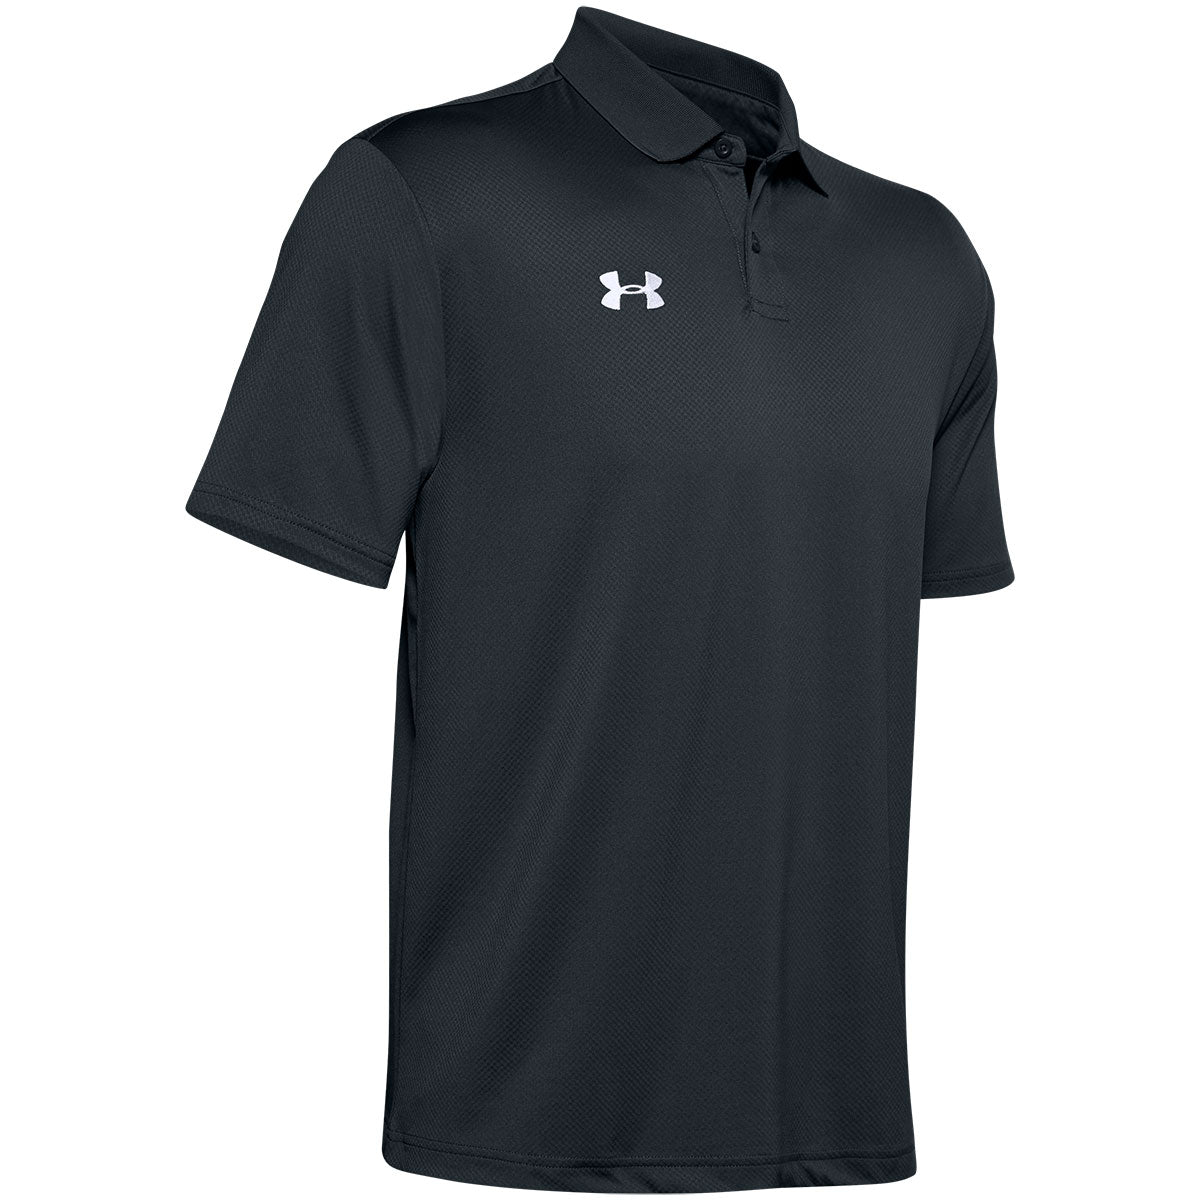 Under Armour Short Sleeve Tech Polo Shirt - Westport Big & Tall